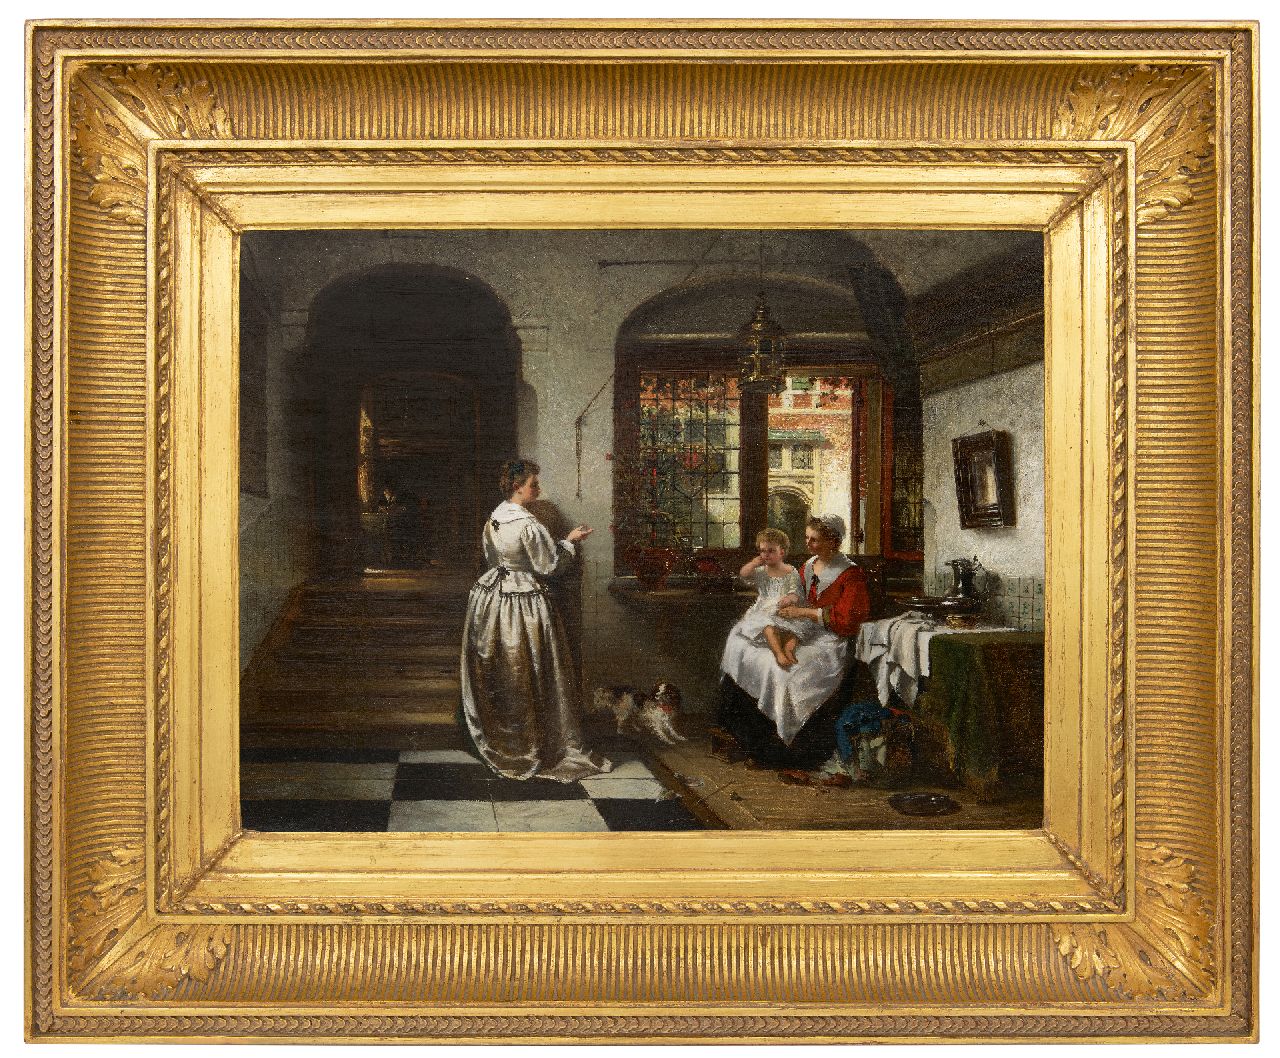 Stroebel J.A.B.  | Johannes Anthonie Balthasar Stroebel | Schilderijen te koop aangeboden | Oudhollands interieur met figuren, olieverf op doek 46,2 x 61,6 cm, gesigneerd linksonder